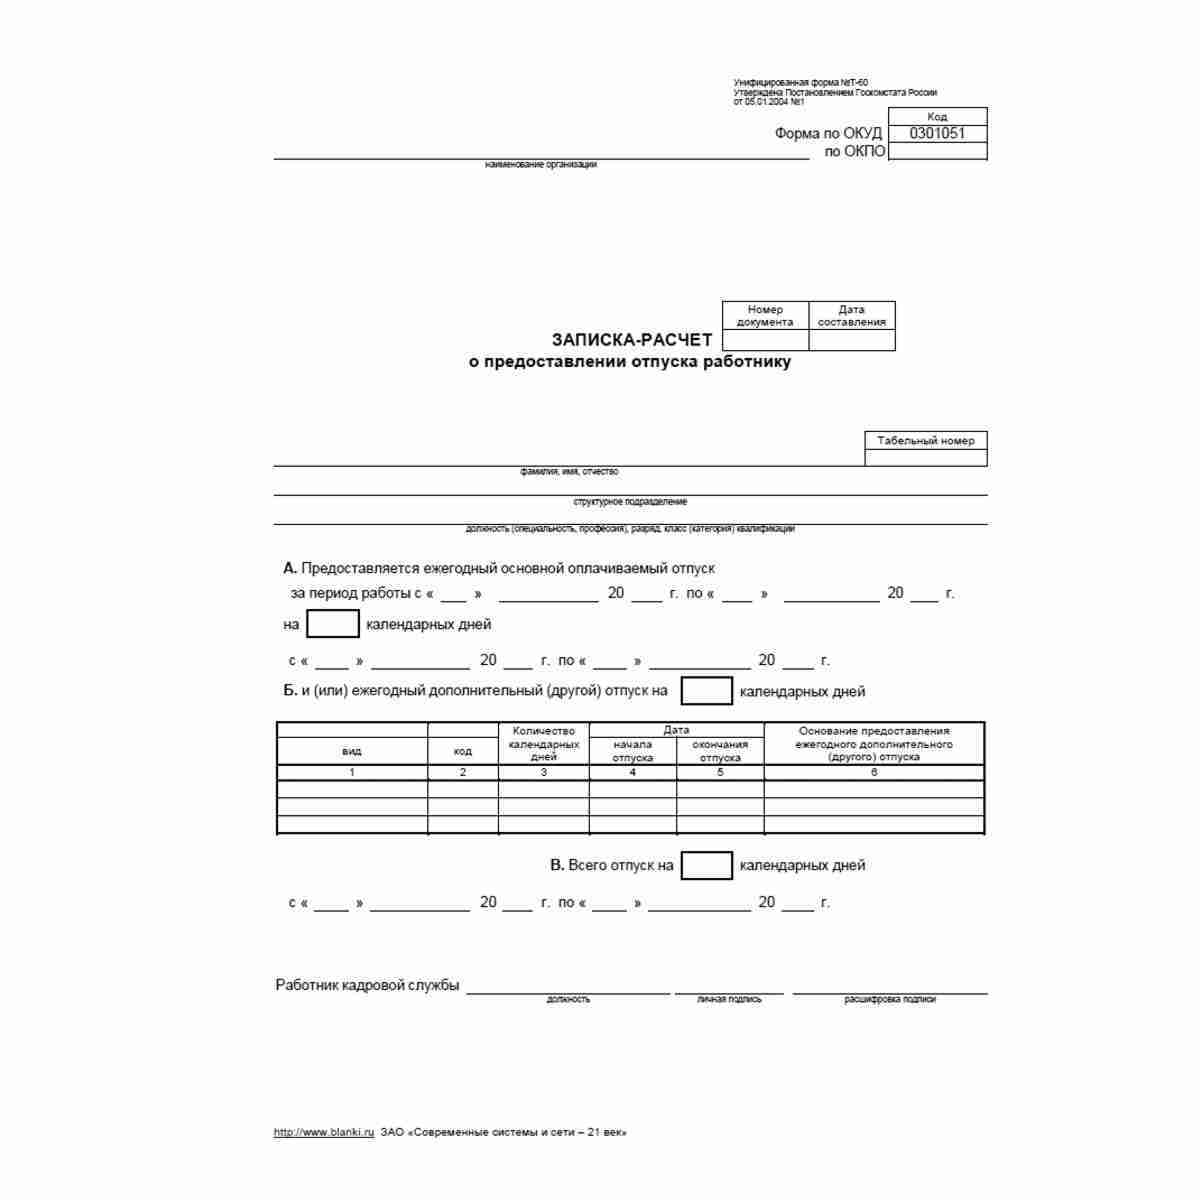 Записка-расчет о предоставлении отпуска работнику форма т-60 образец заполнения